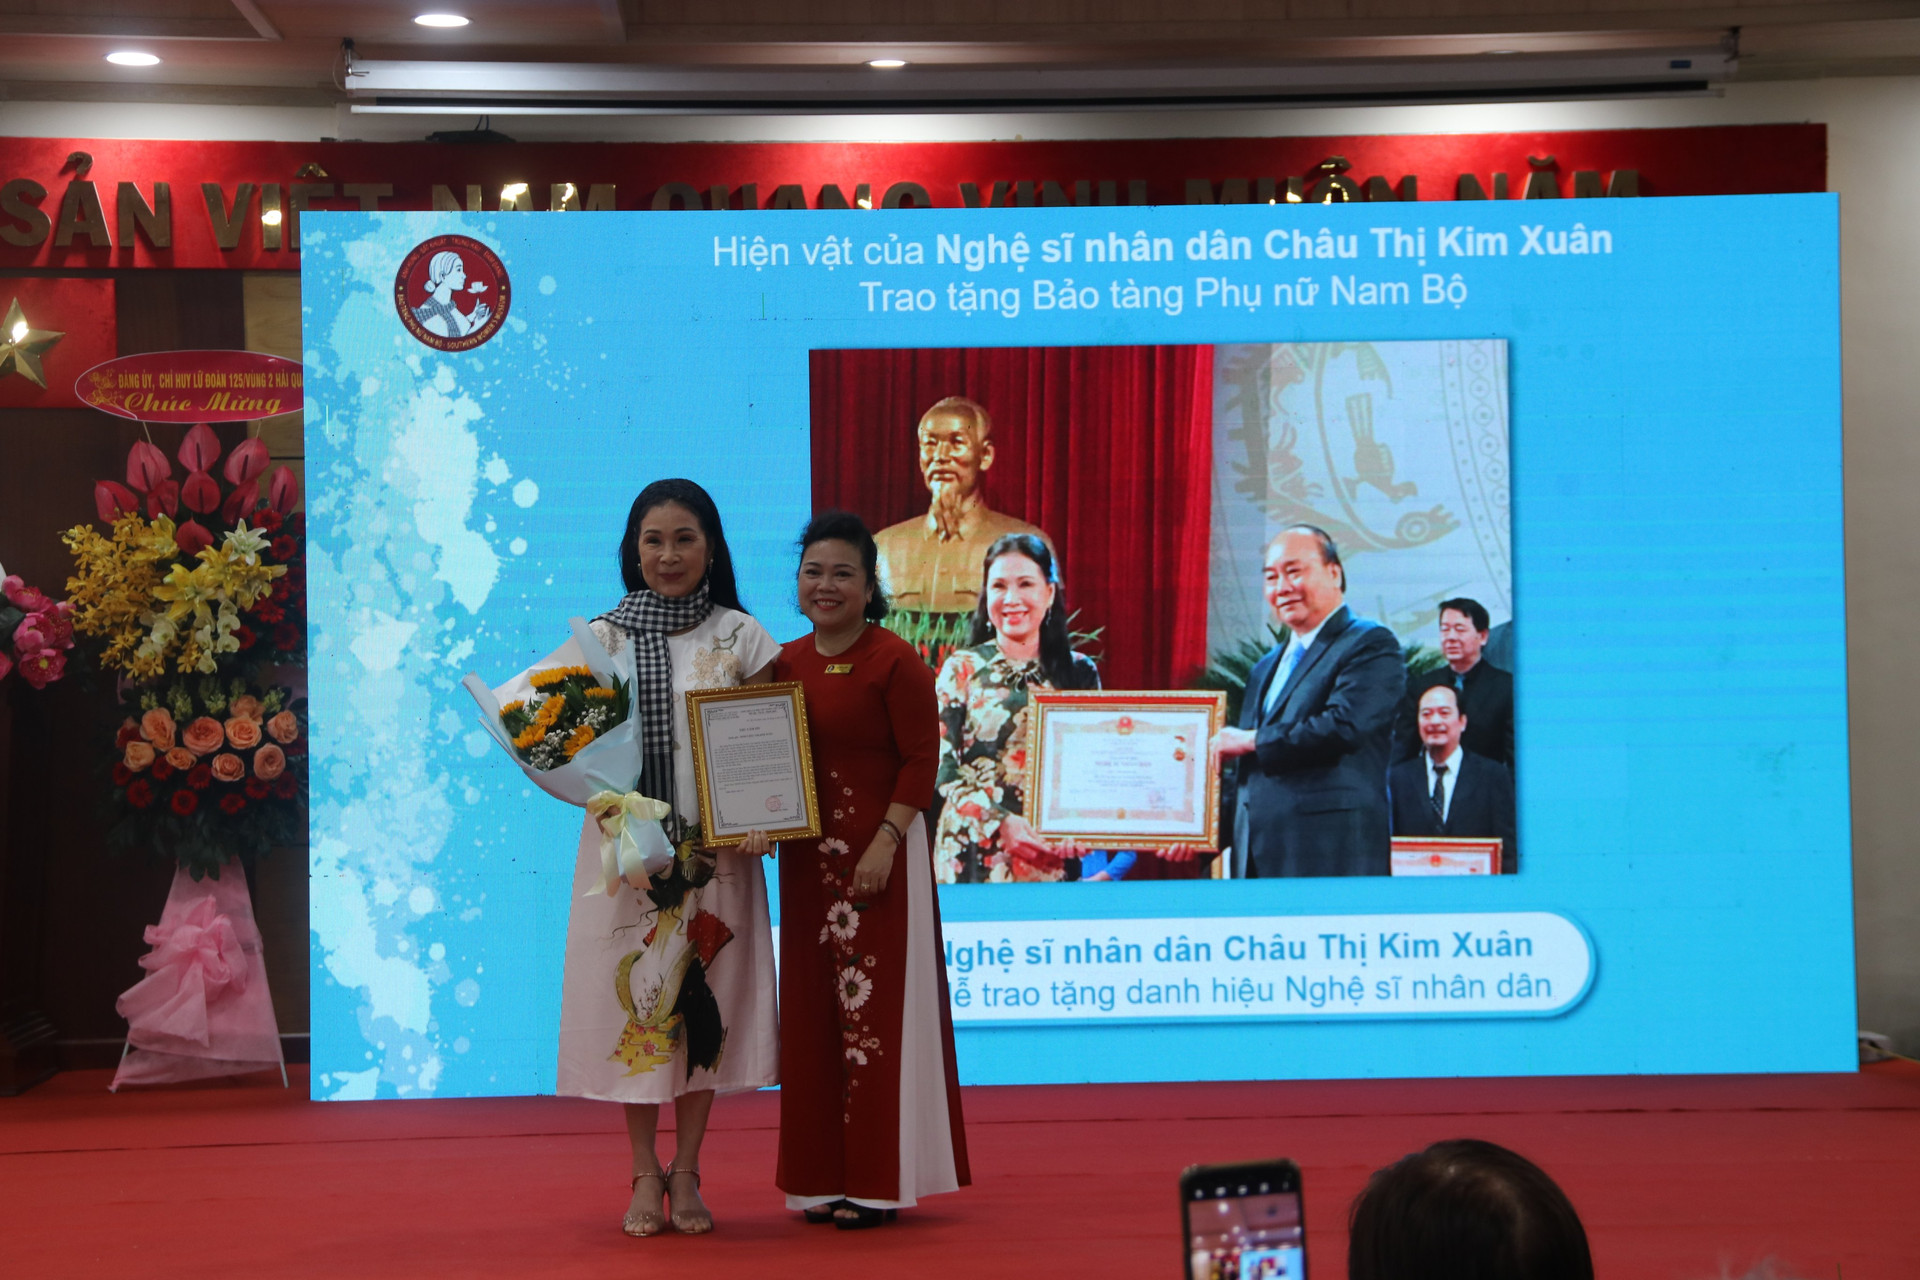 Nghệ sỹ Nhân dân Kim Xuân nhận thư cảm ơn của bà  Nguyễn Thị Thắm, Giám đốc Bảo tàng Phụ nữ Nam Bộ TP.HCM